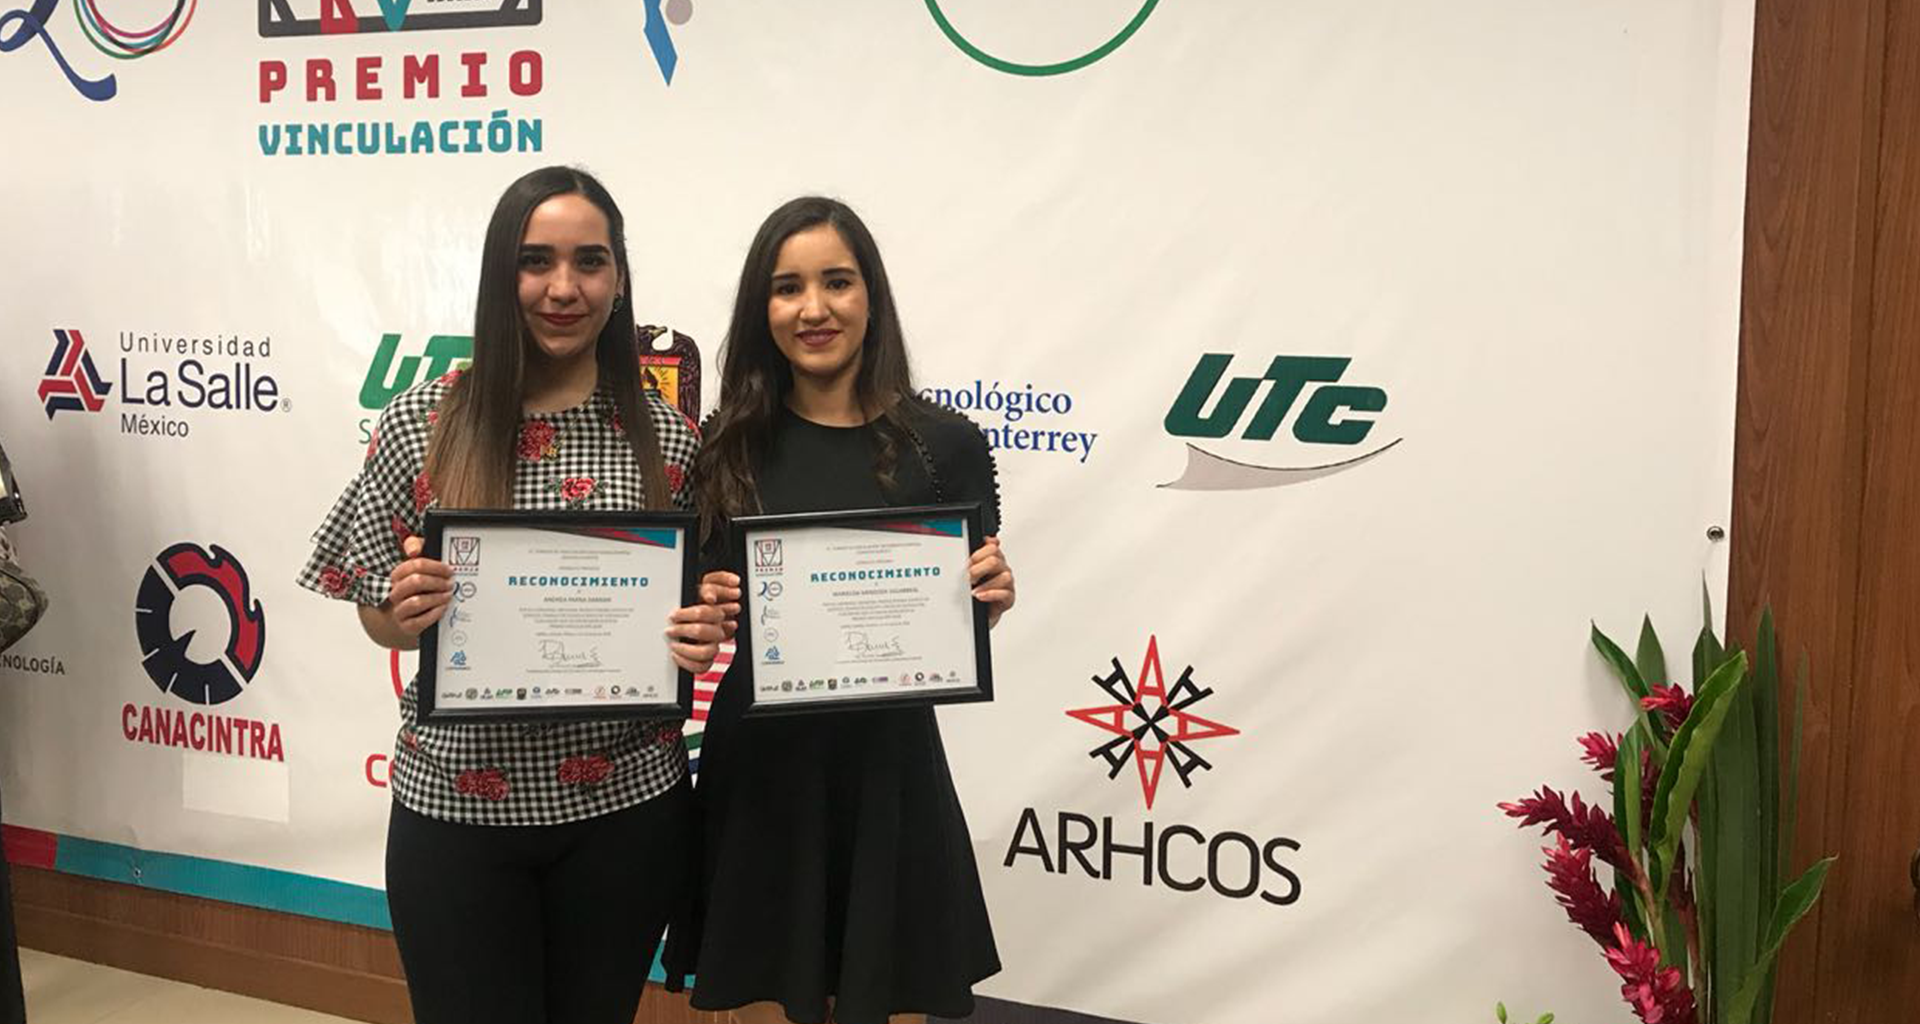 Andrea Parra y Marielisa Mendoza con su Premio Vinculación 2018